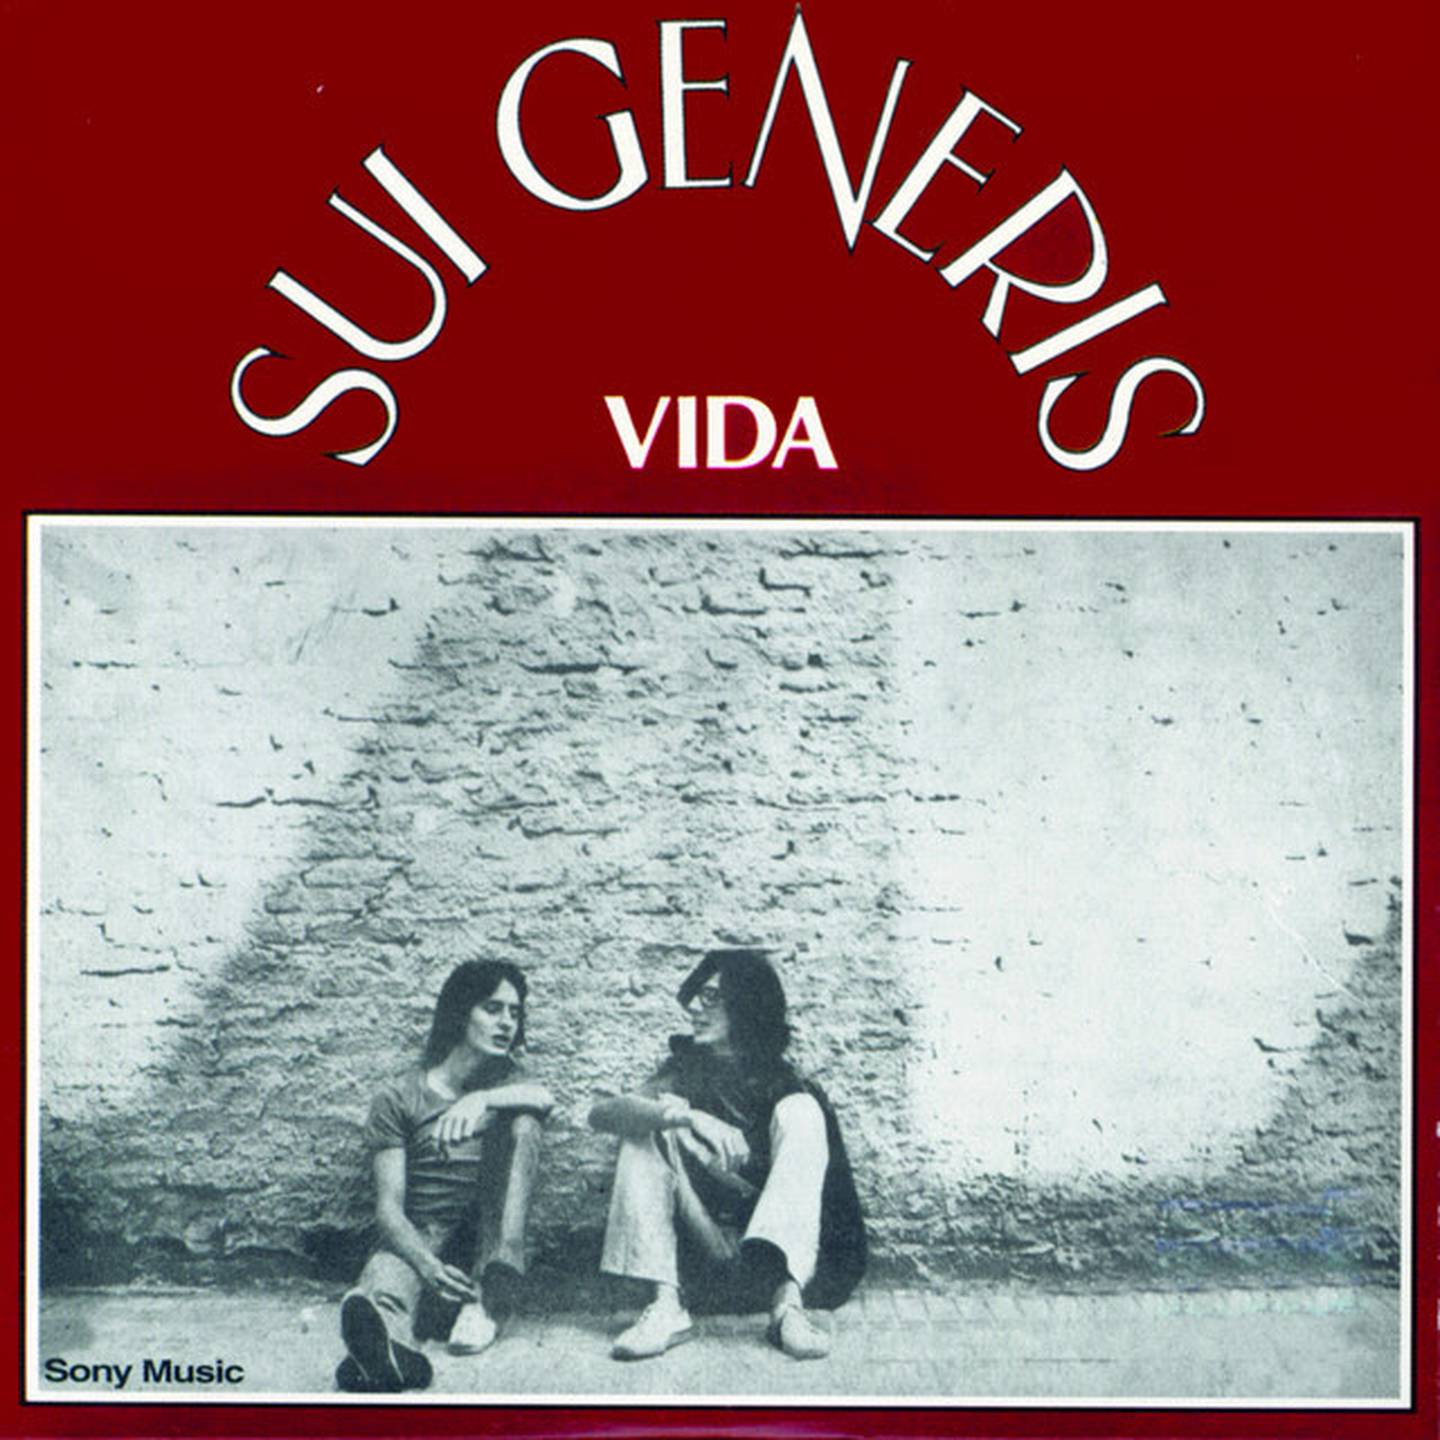 El disco 'Vida' de Sui Generis (Charly García y Nito Mestre), marcó un hito en la historia del rock en español.